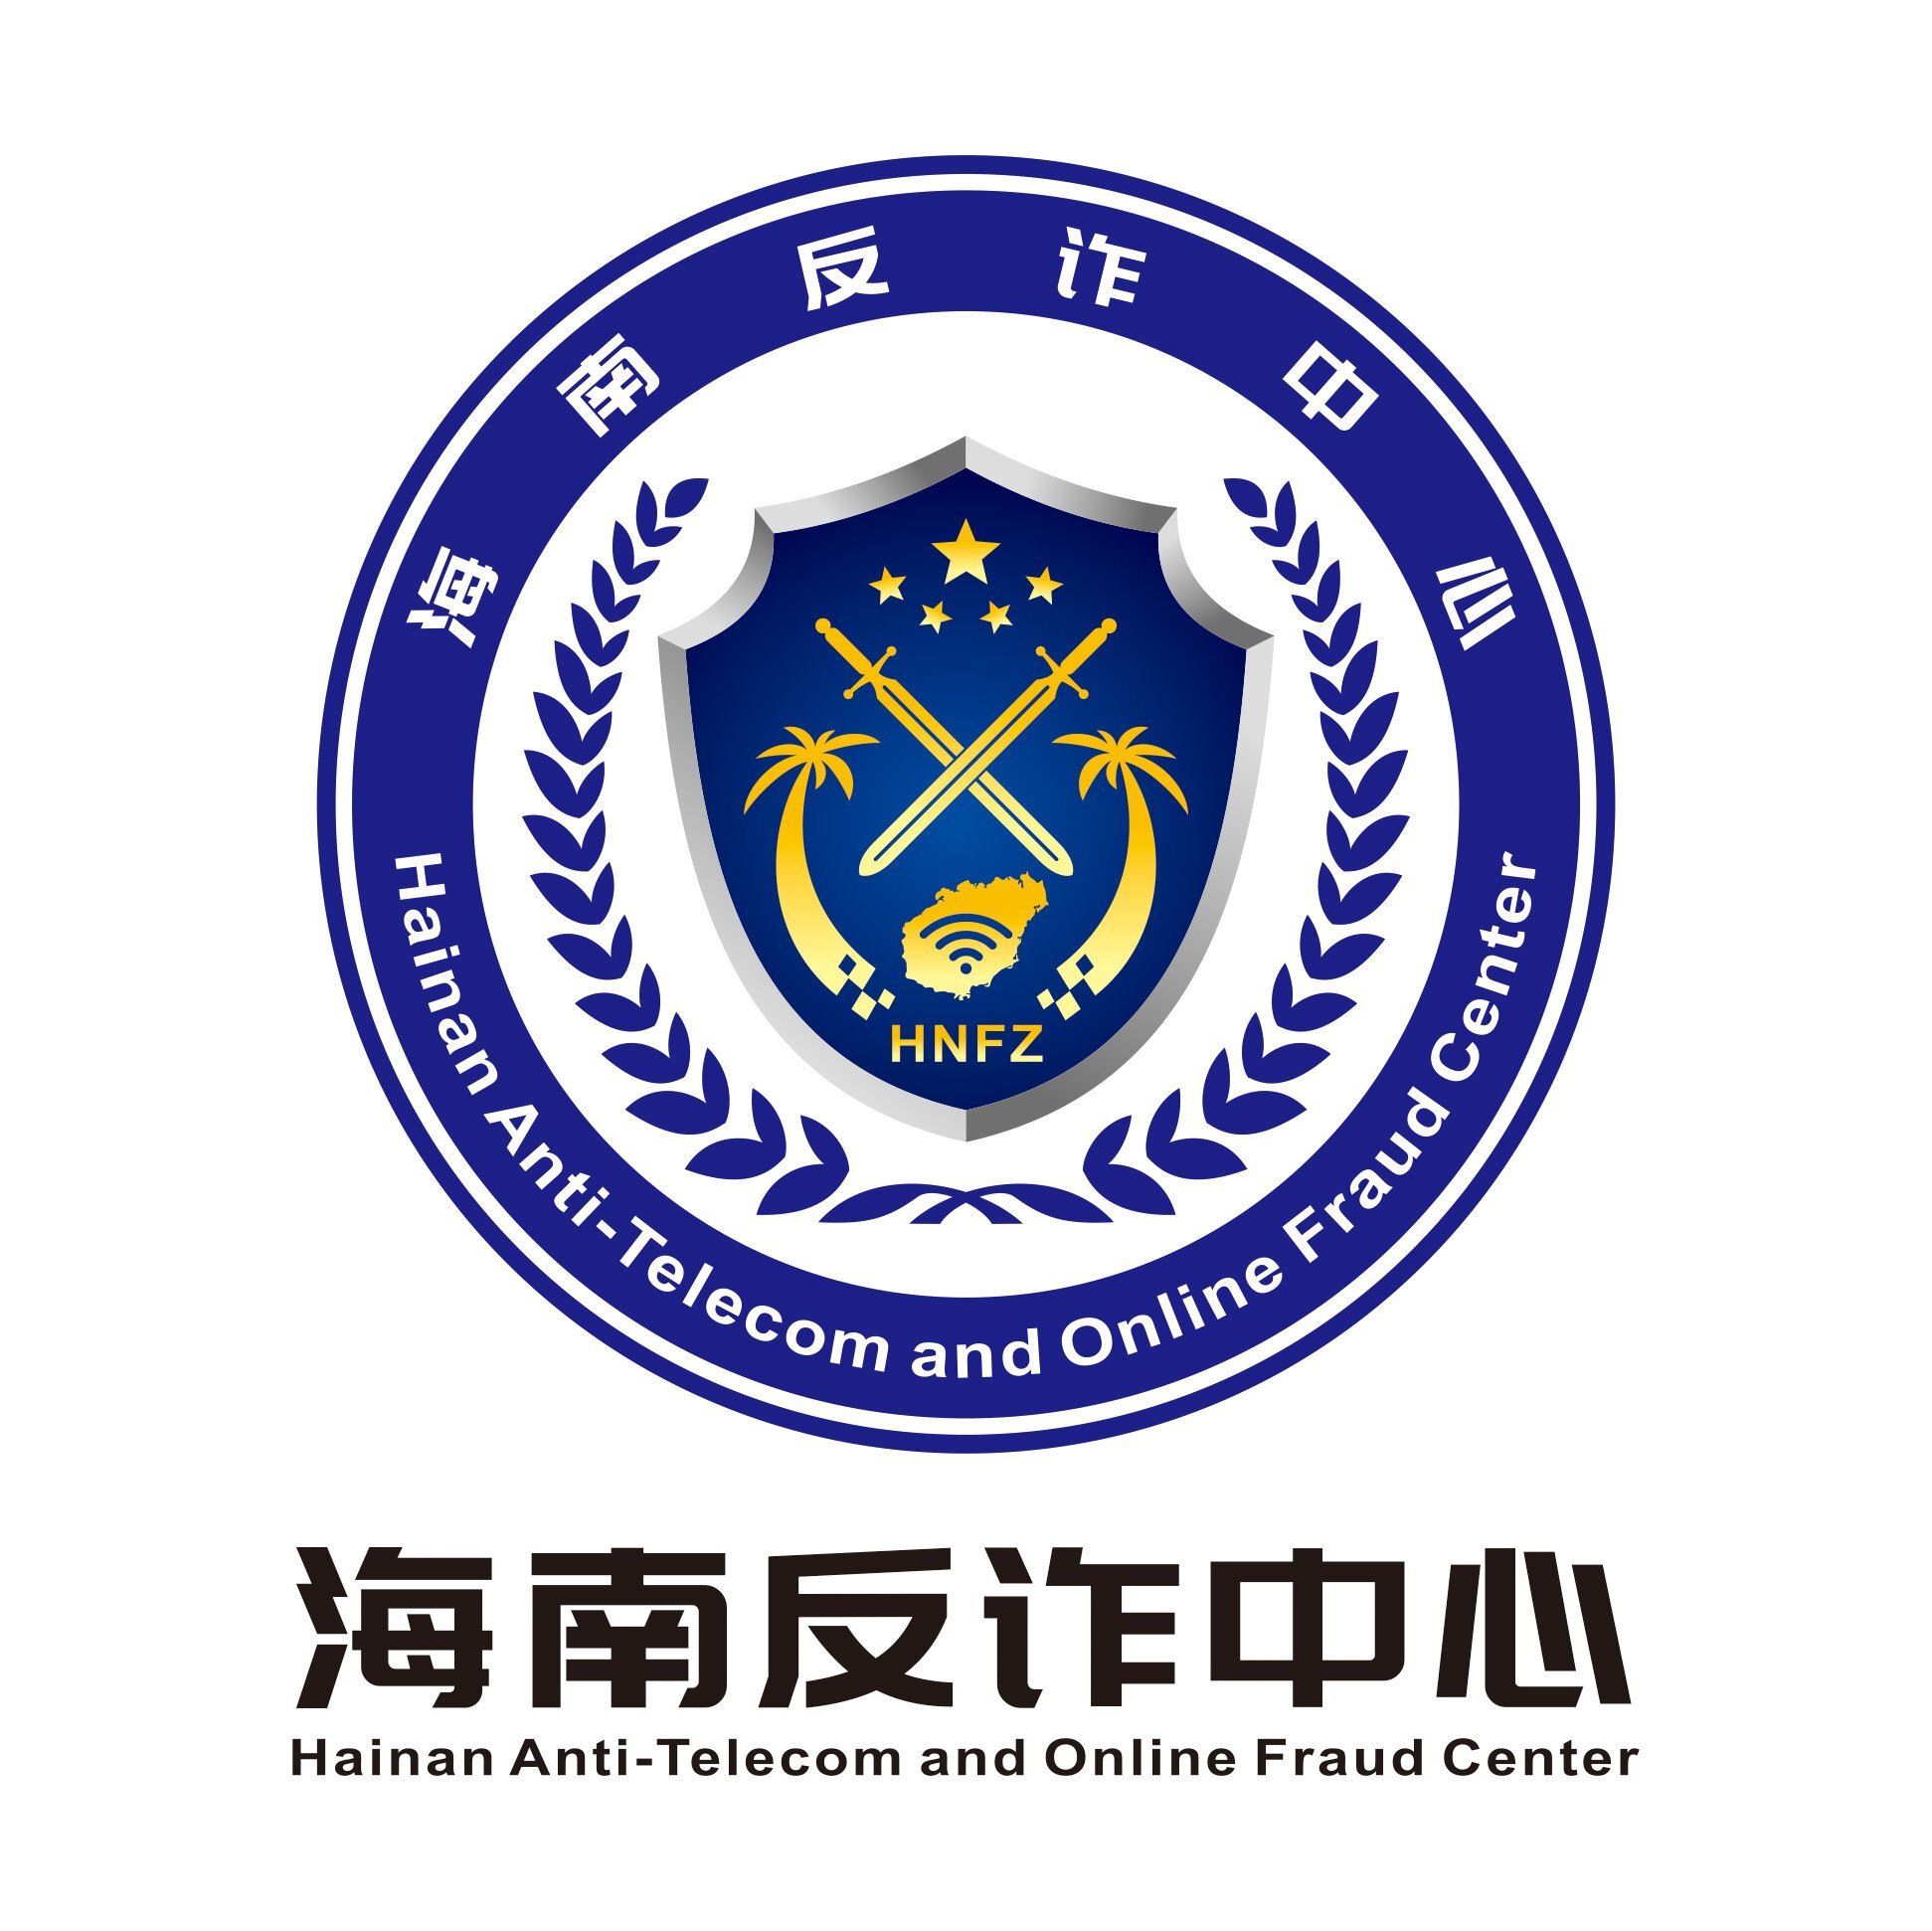 海南省反电信网络诈骗中心形象logo征集活动圆满结束